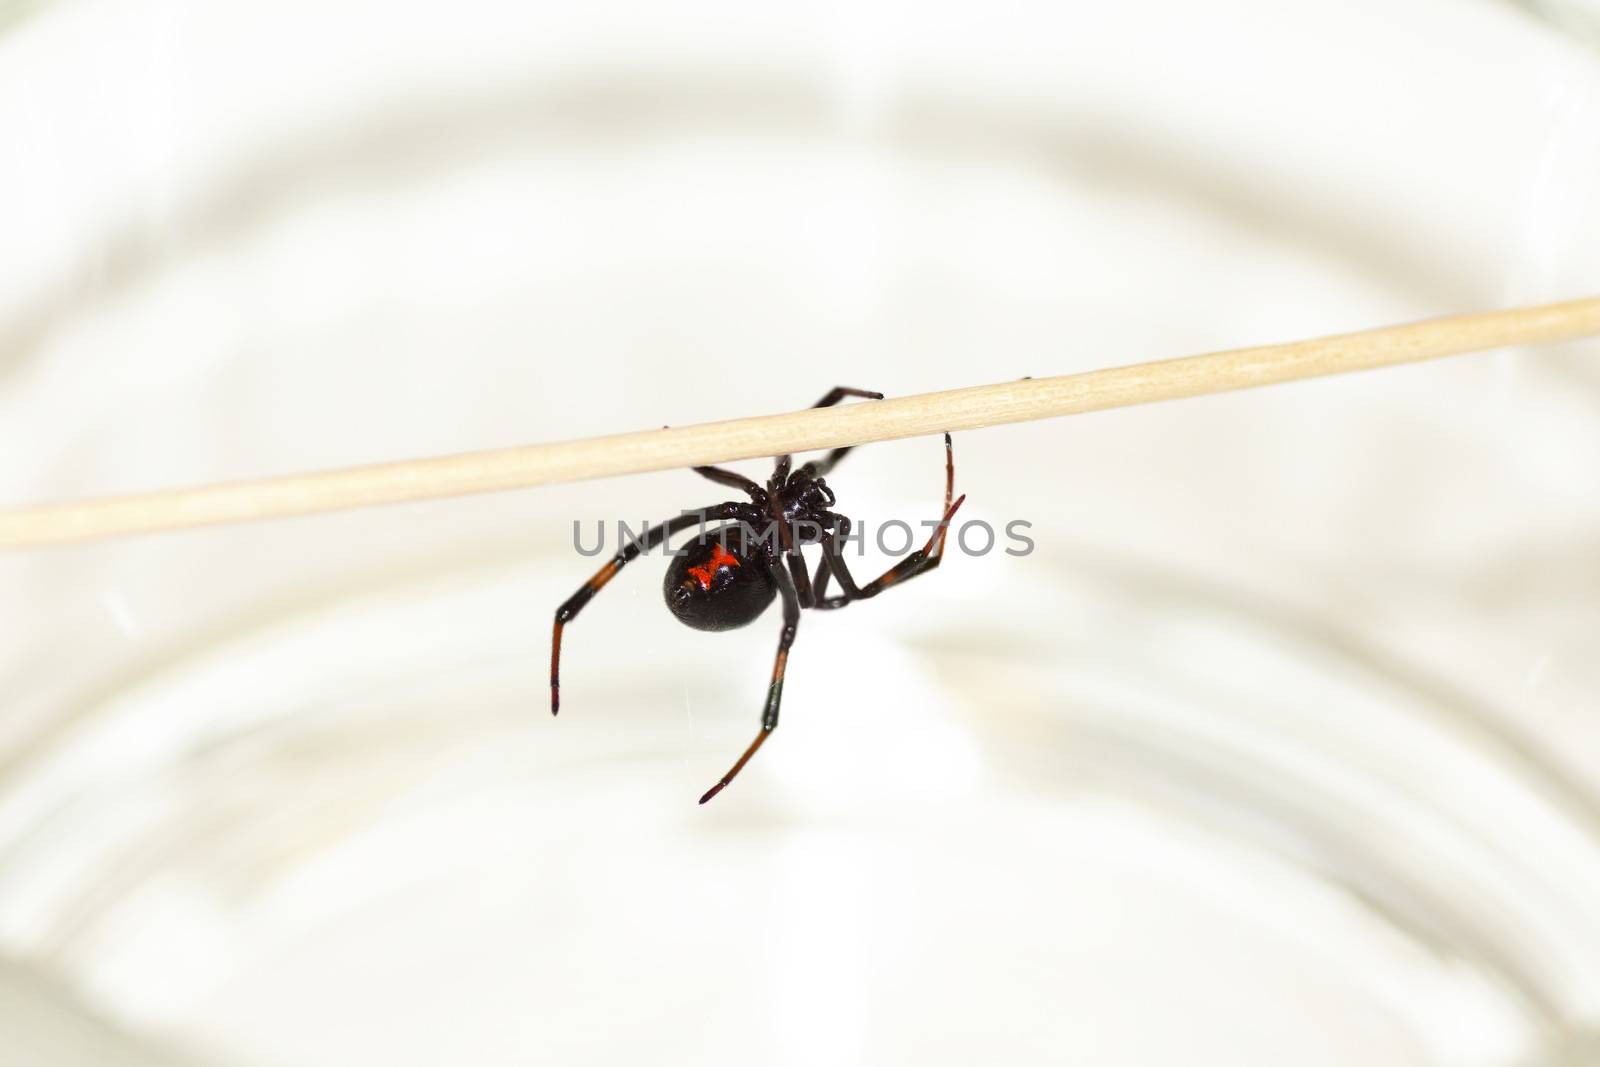 Black widow spider-2 by Mirage3